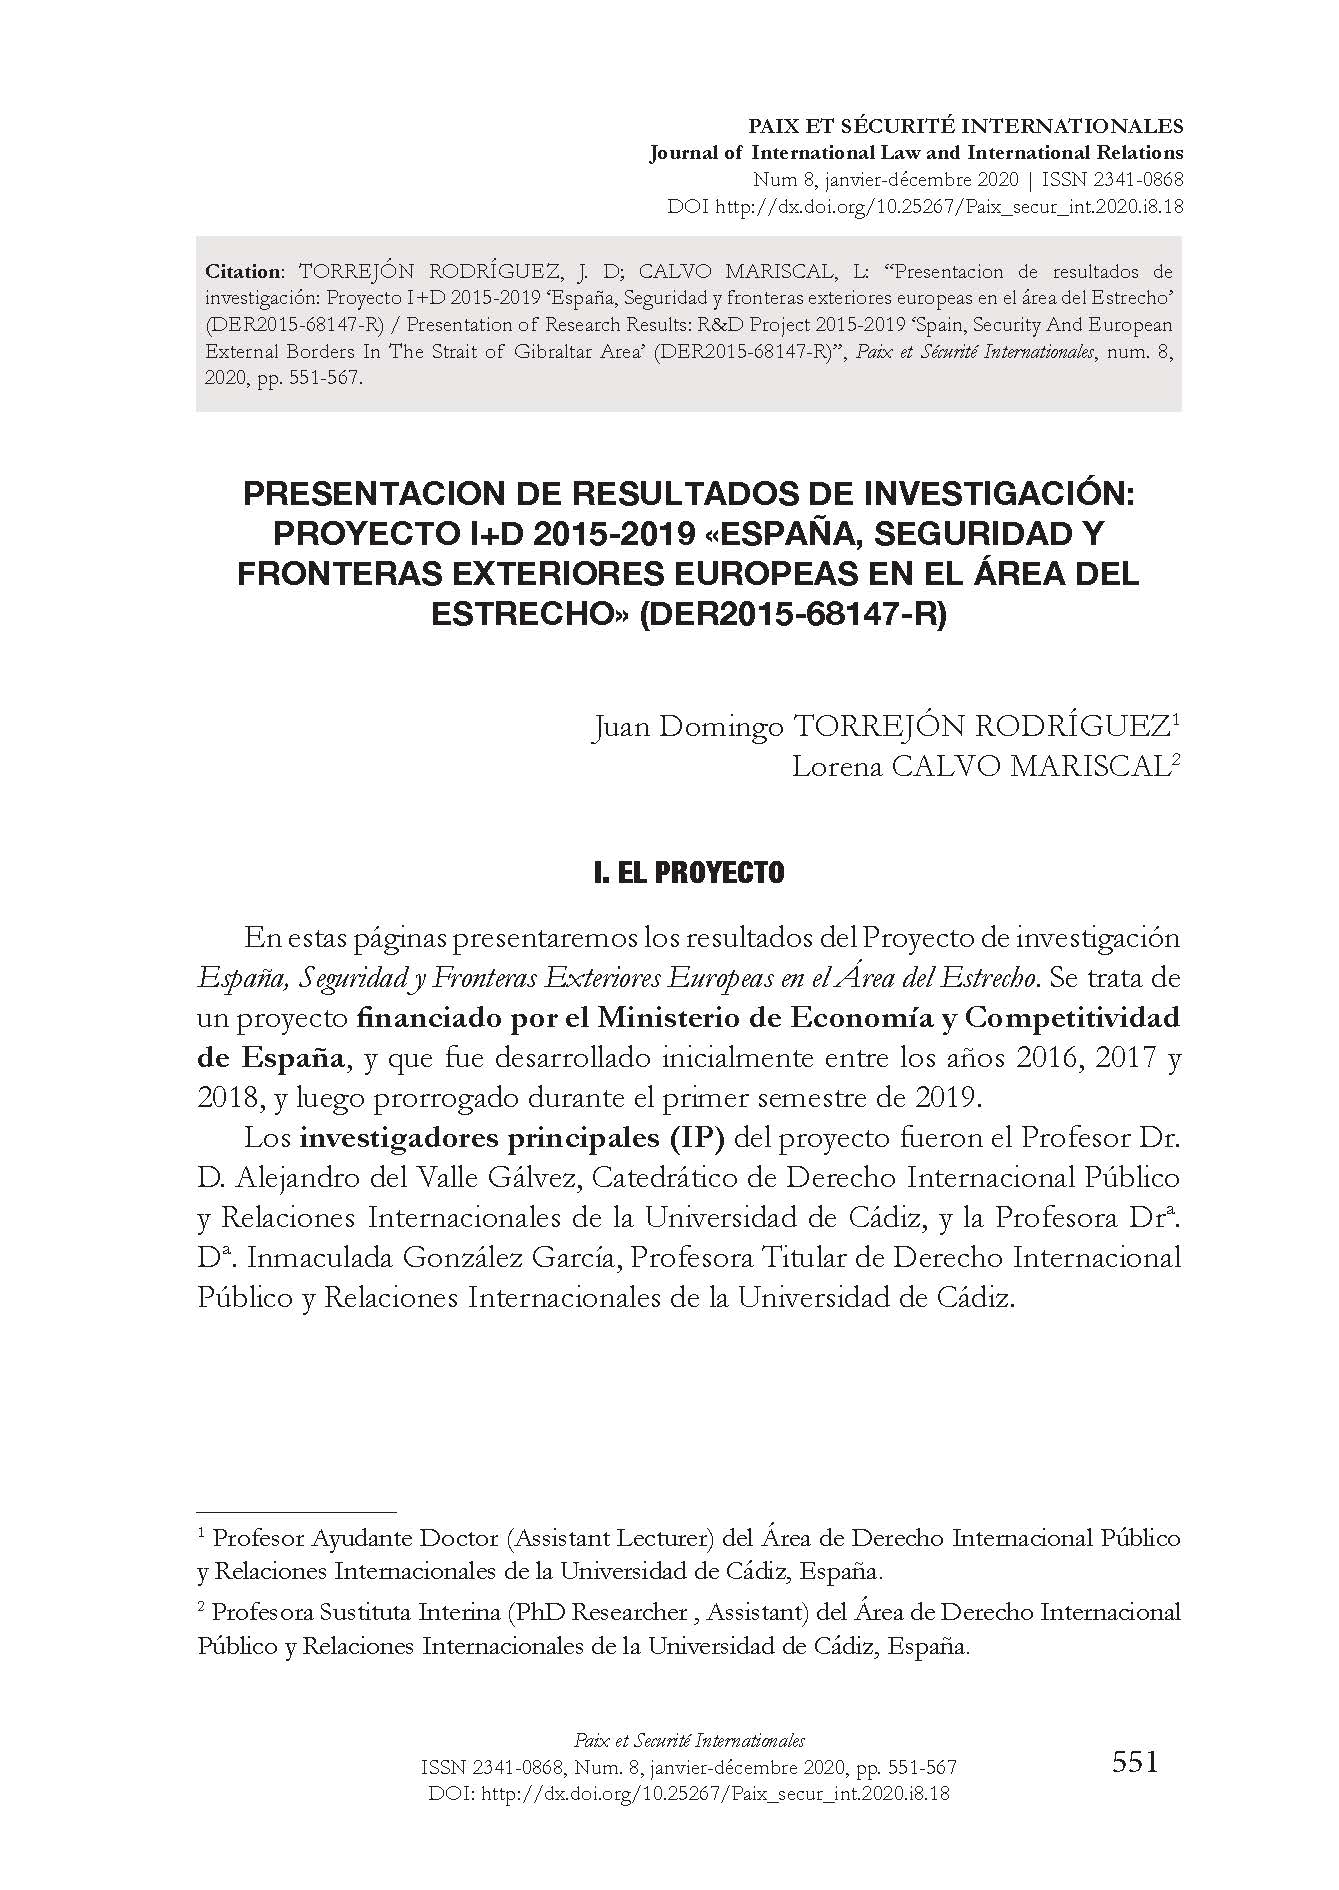 Presentacion de resultados de investigación: Proyecto I+D 2015-2019 ‘España, Seguridad y fronteras exteriores europeas en el área del Estrecho’ (DER2015-68147-R) / Presentation of Research Results: R&D Project 2015-2019 